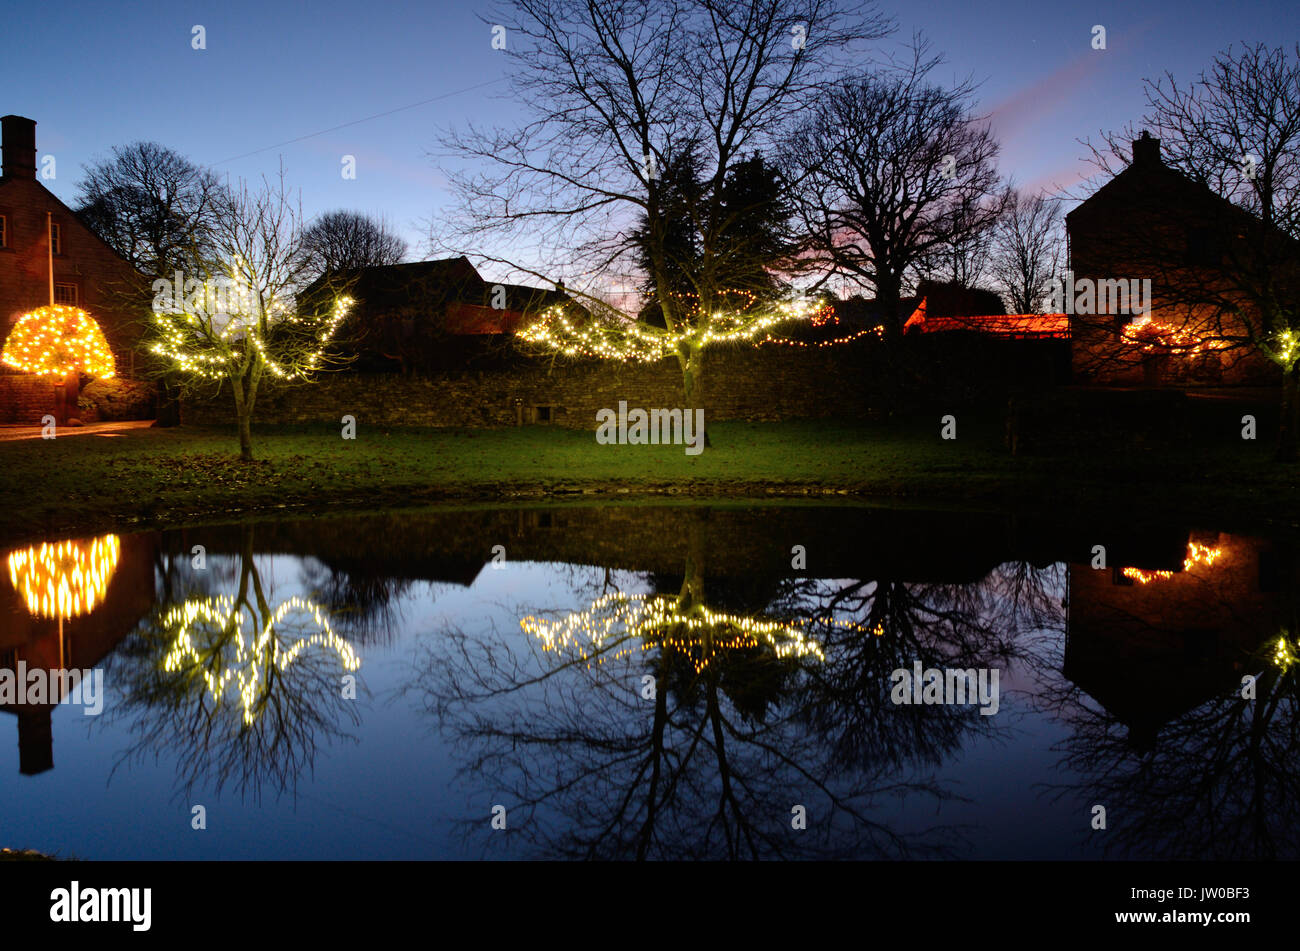 Le luci di Natale decorano alberi intorno al laghetto in Foolow, un pittoresco villaggio nel Peak District,Derbyshire,Inghilterra Regno Unito - Dicembre Foto Stock